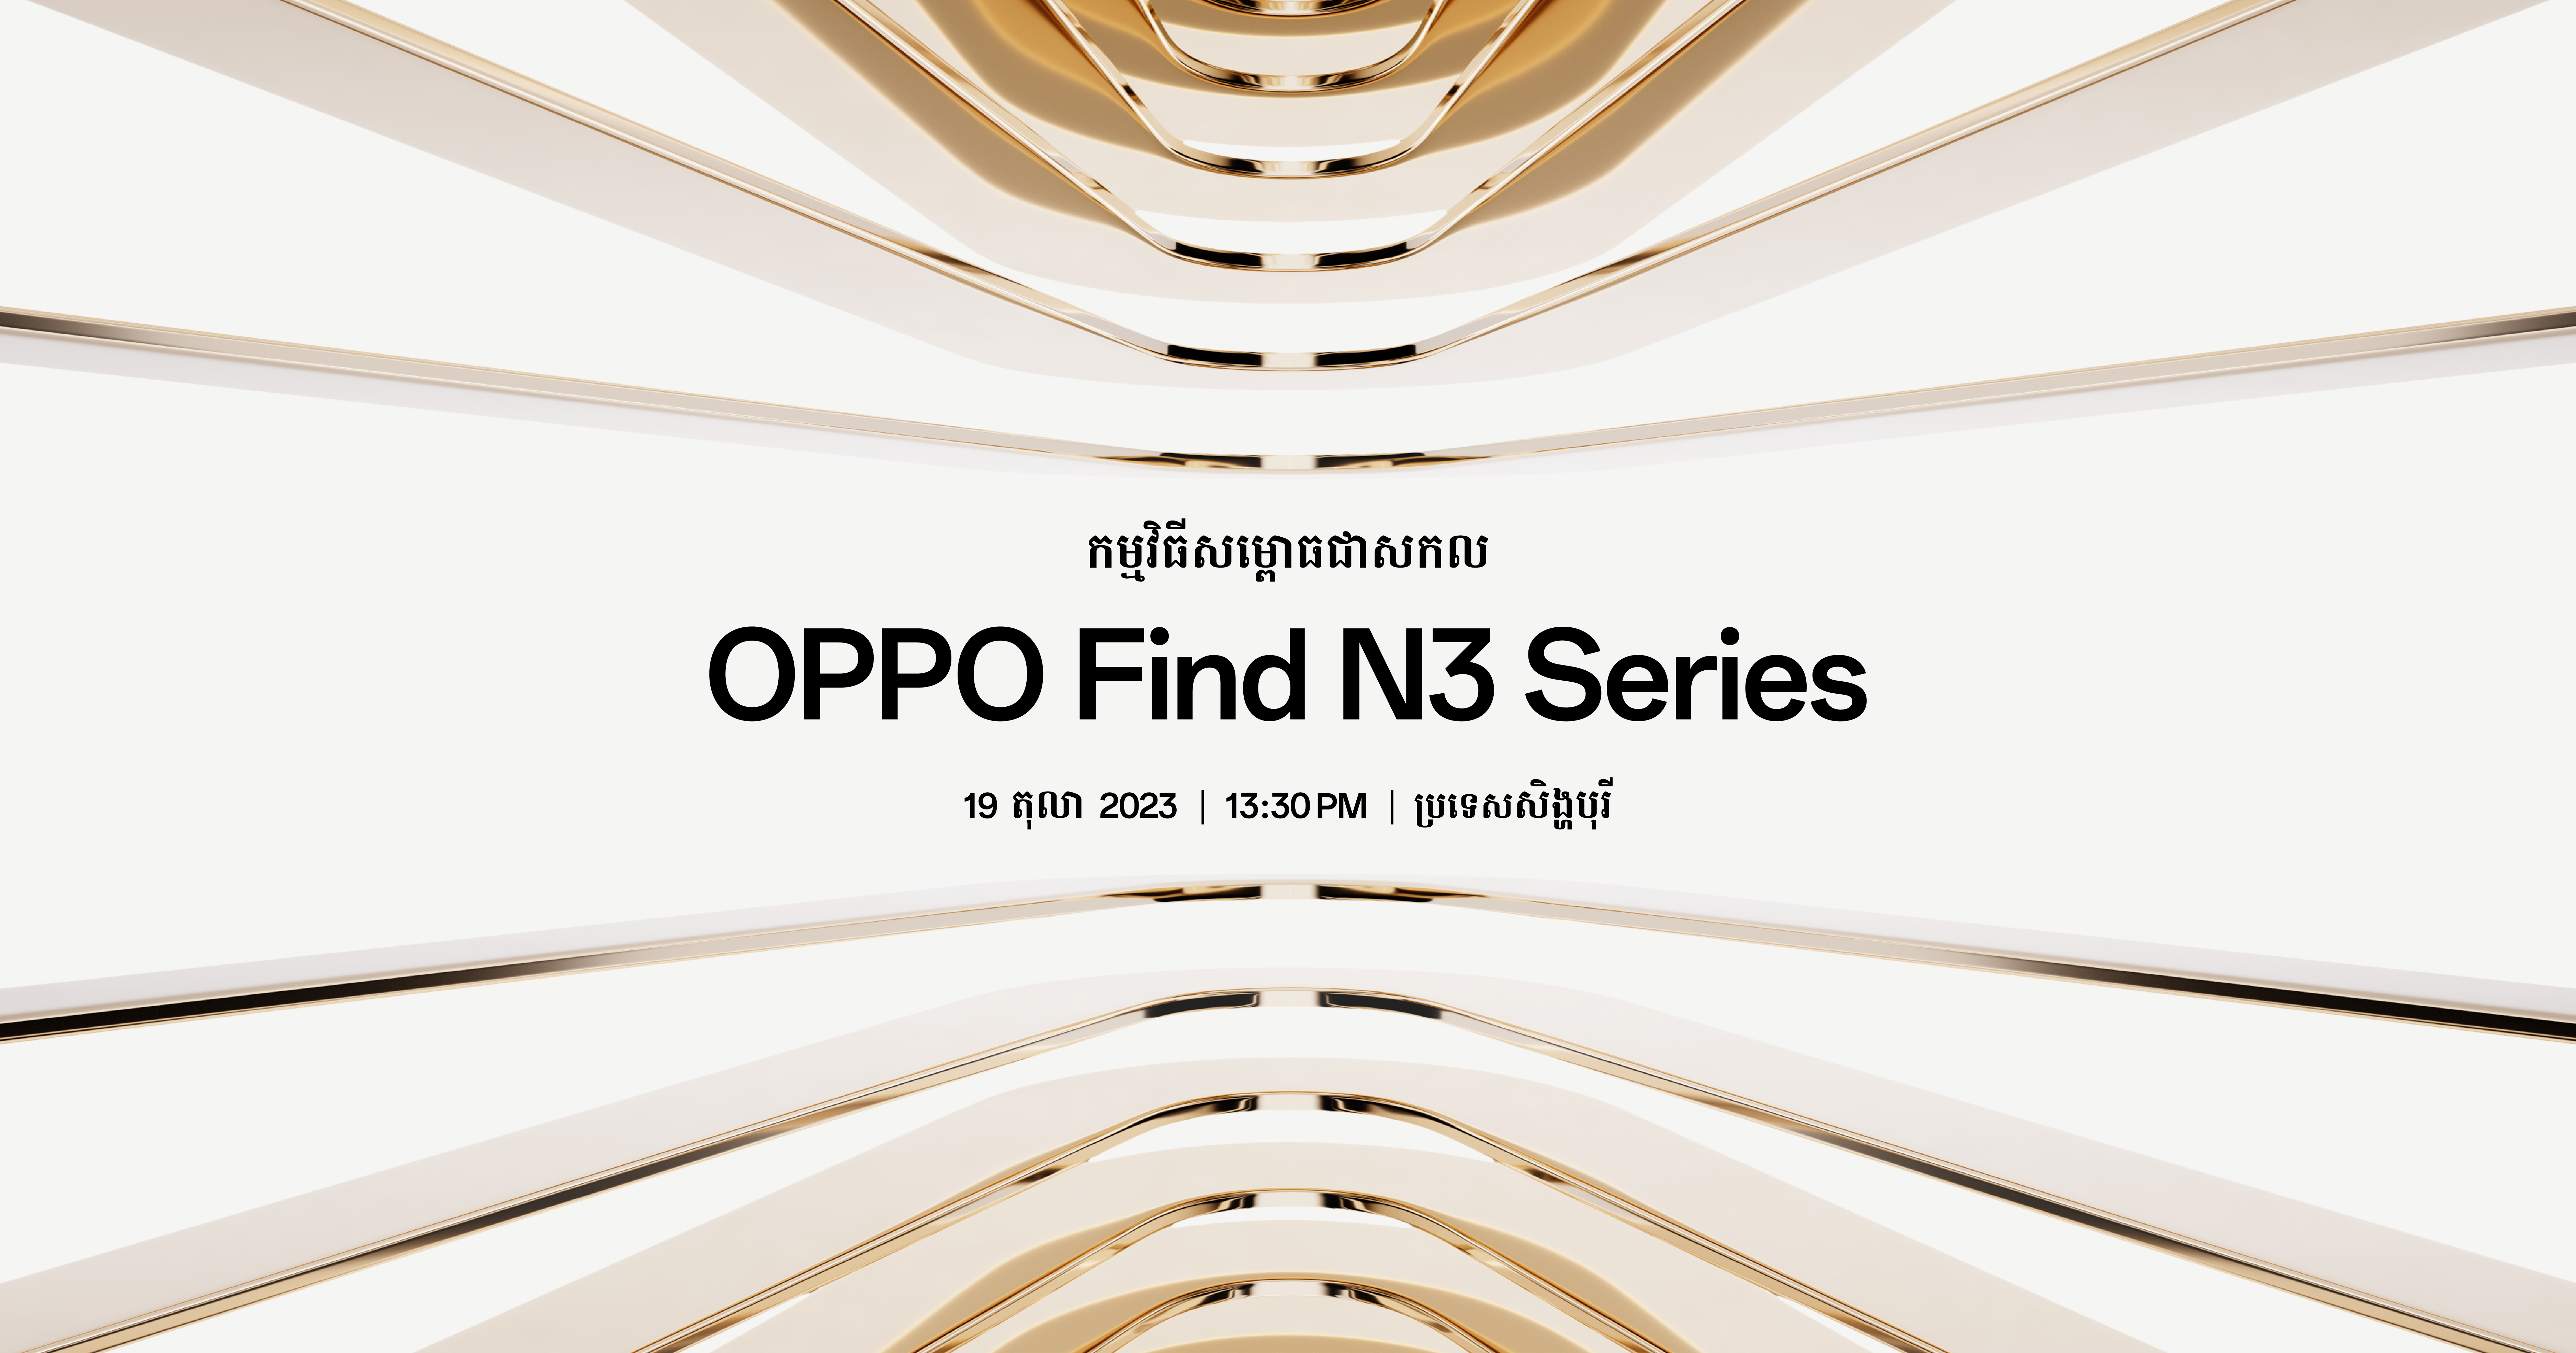 ស្មាតហ្វូនអេក្រង់បត់ដែលល្អផ្តាច់គេនឹងលេចរូបរាងឡើងនៅ «កម្មវិធីសម្ពោធជាសកល OPPO Find N3 Series» ឆាប់ៗនេះ